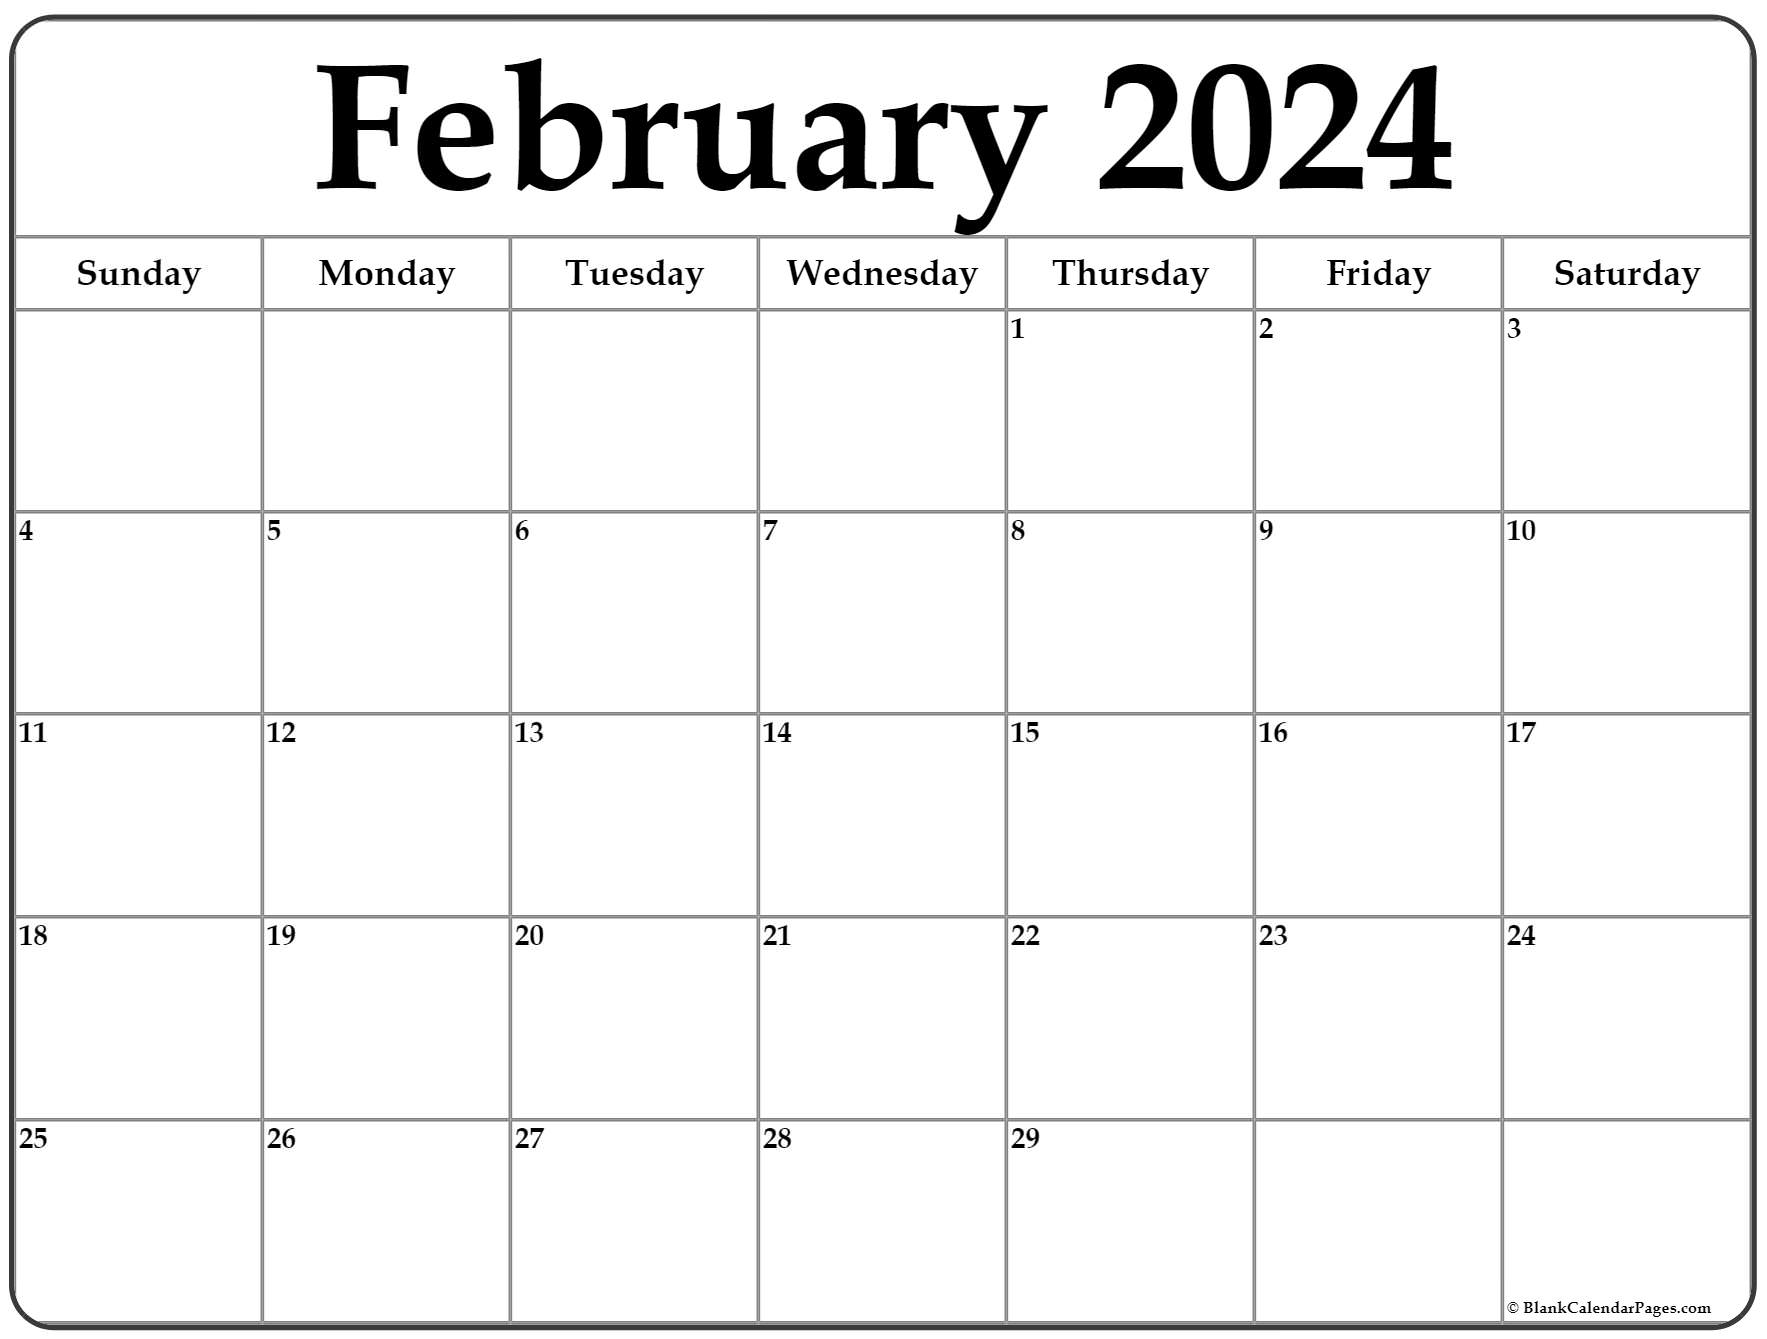 February 2024 Calendar | Free Printable Calendar for February 2024 Monthly Calendar Printable